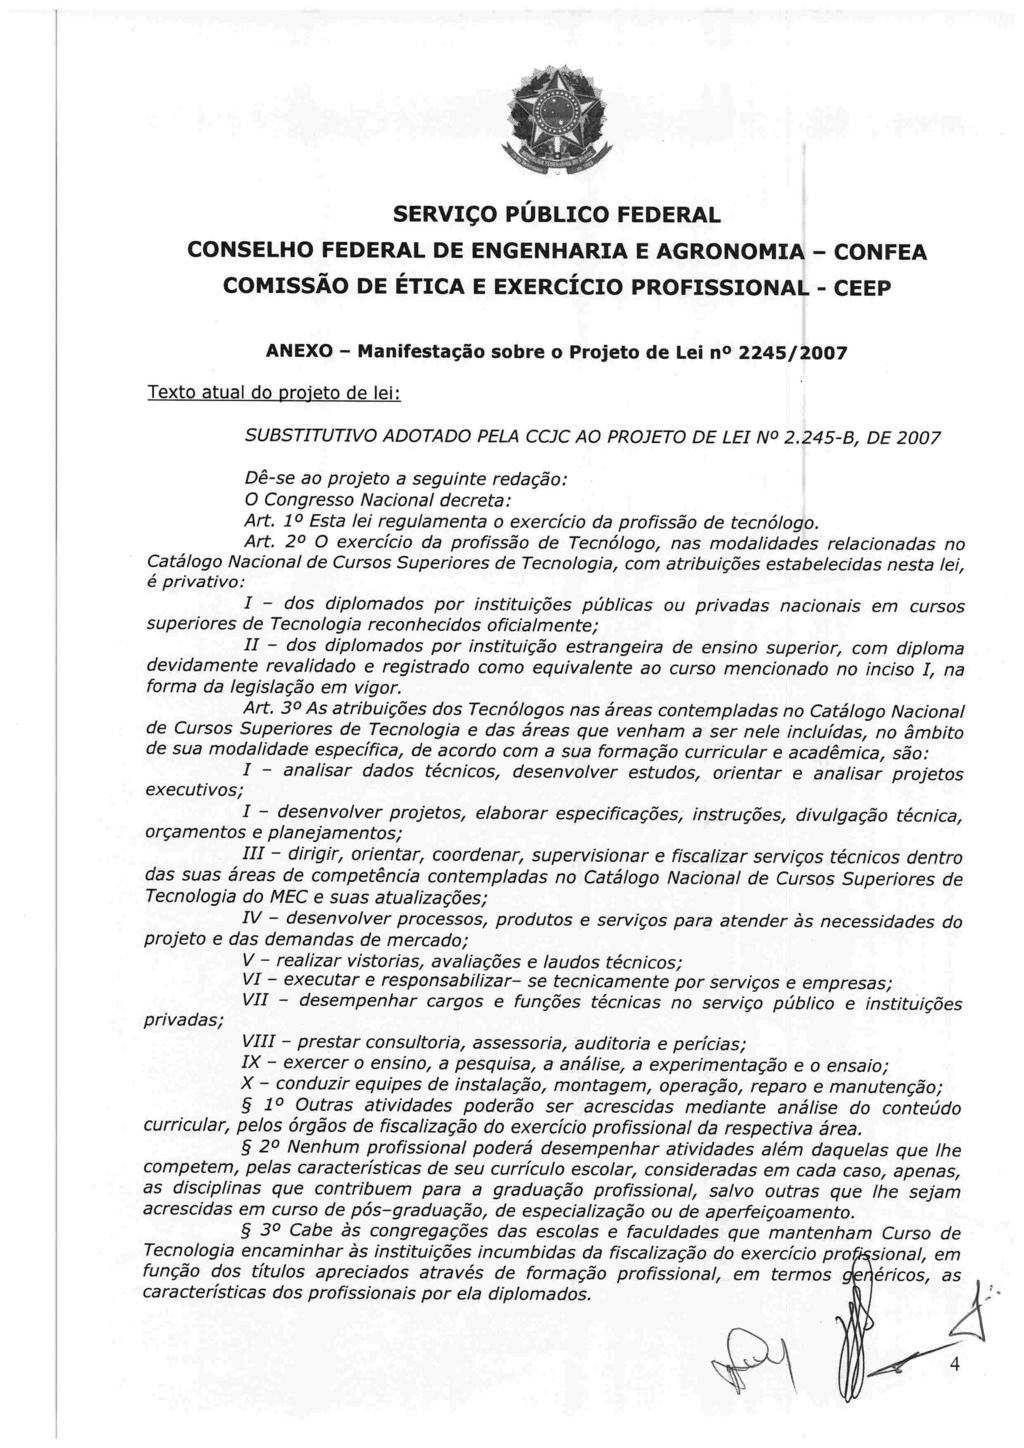 ANEXO Manifestação sobre o Projeto de Lei no 2245/2007 Texto atual do Droieto de lei SUBSTITUTIVO ADOTADO PELA CCIC AO PROJET0 DE LEI NO 2.